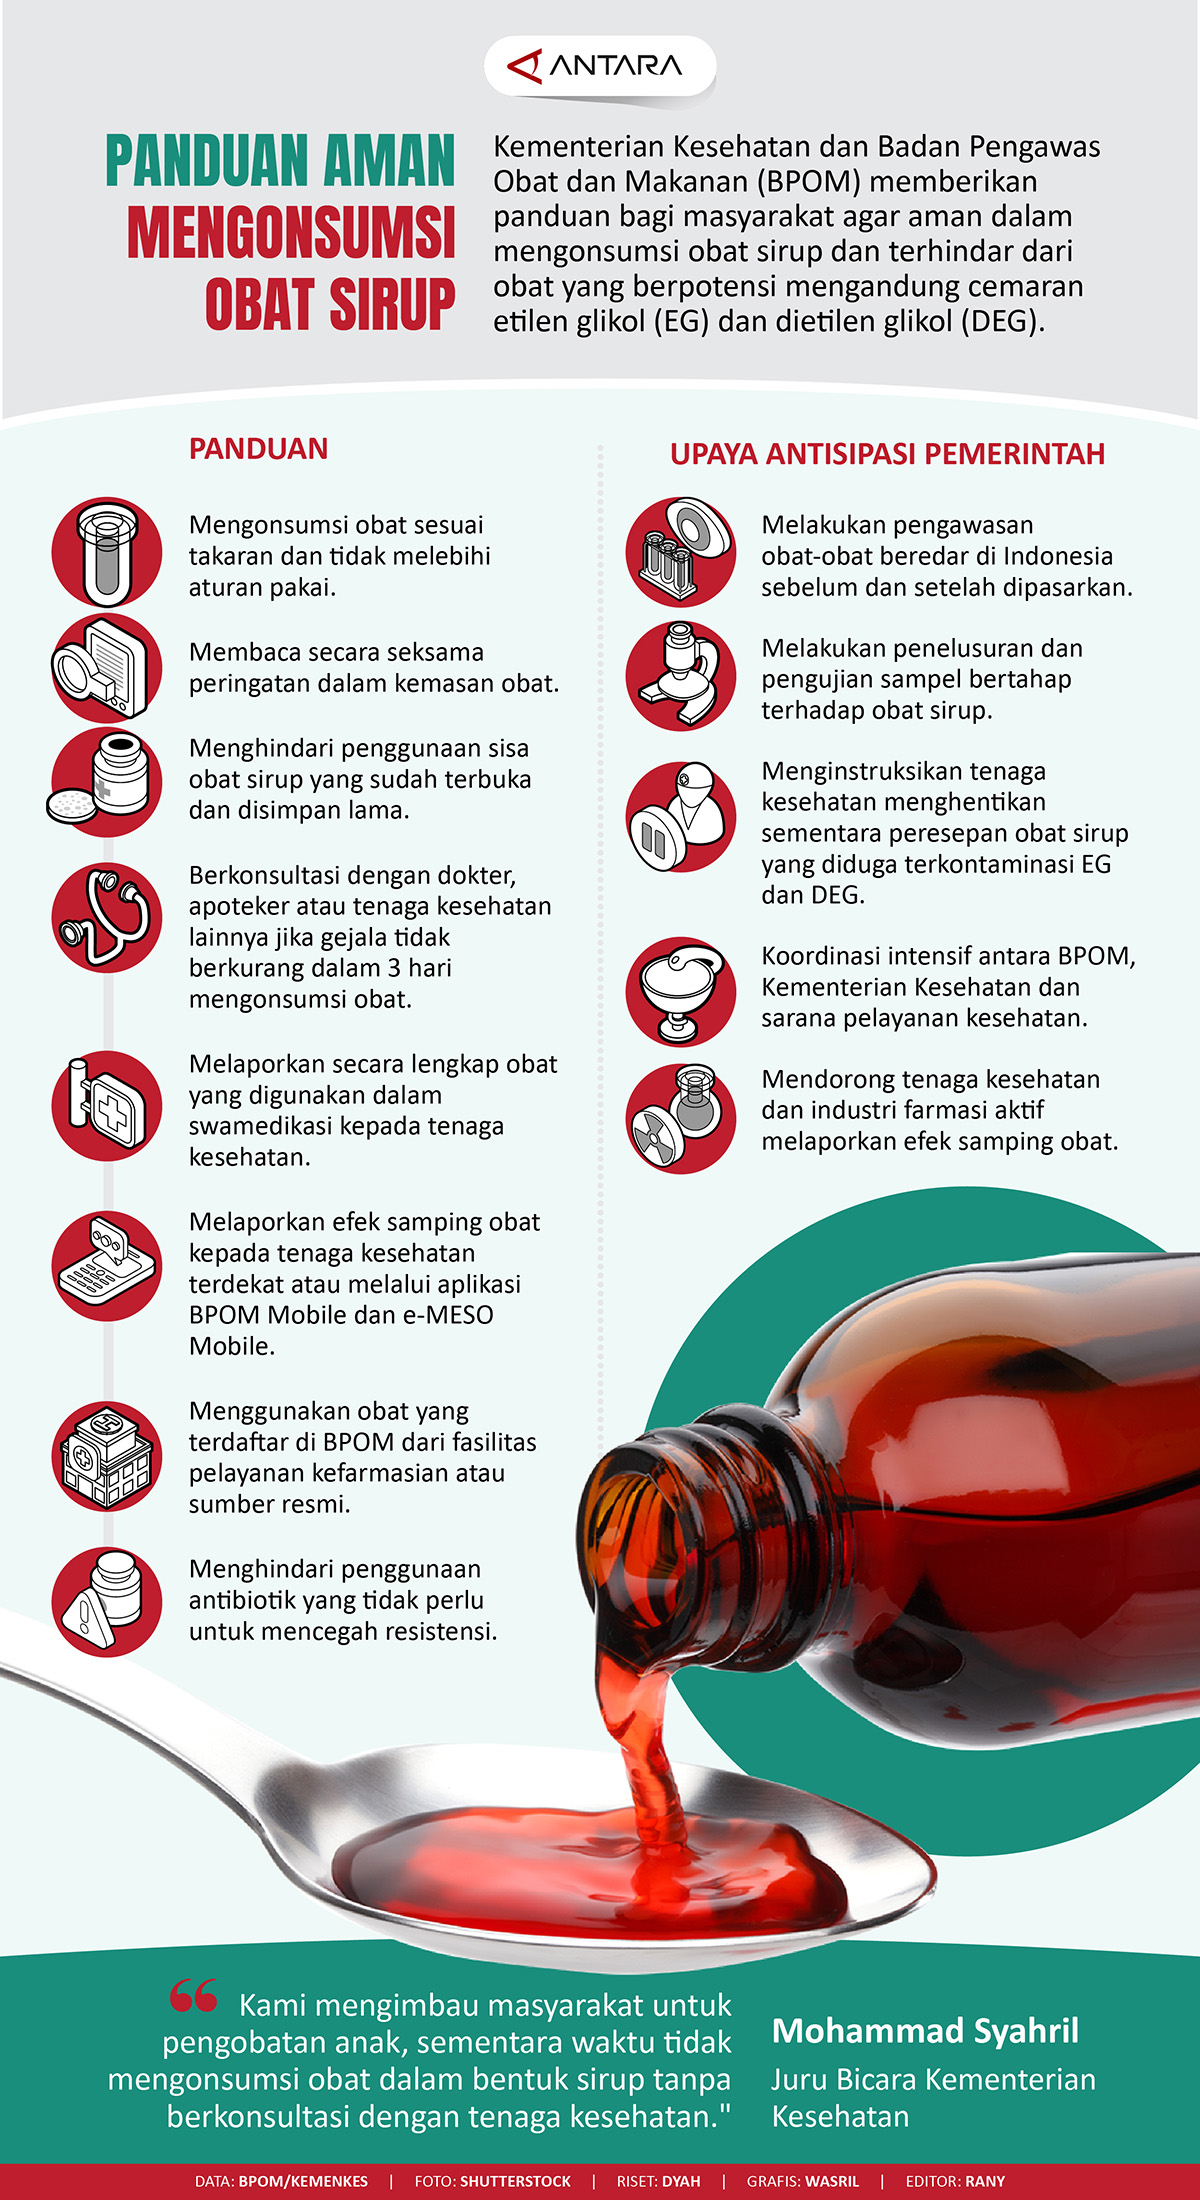 Panduan aman mengonsumsi obat sirup